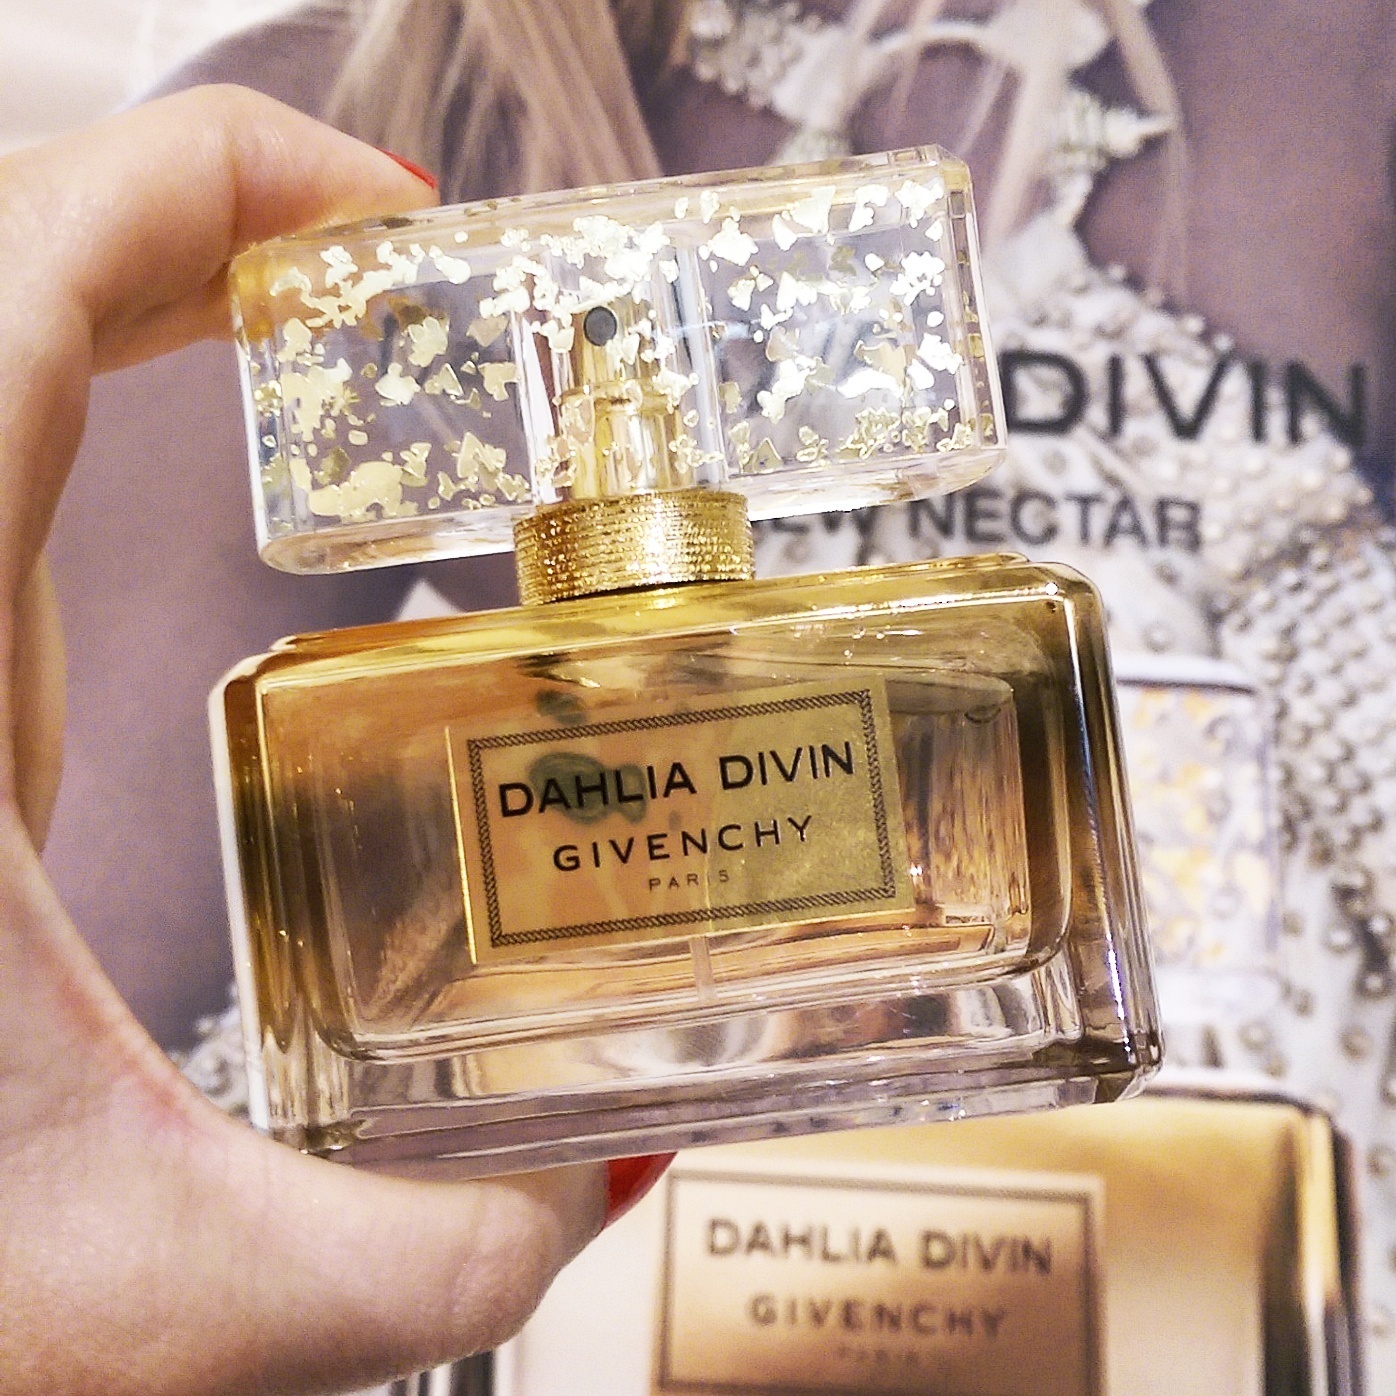 givenchy perfume dahlia divin le nectar